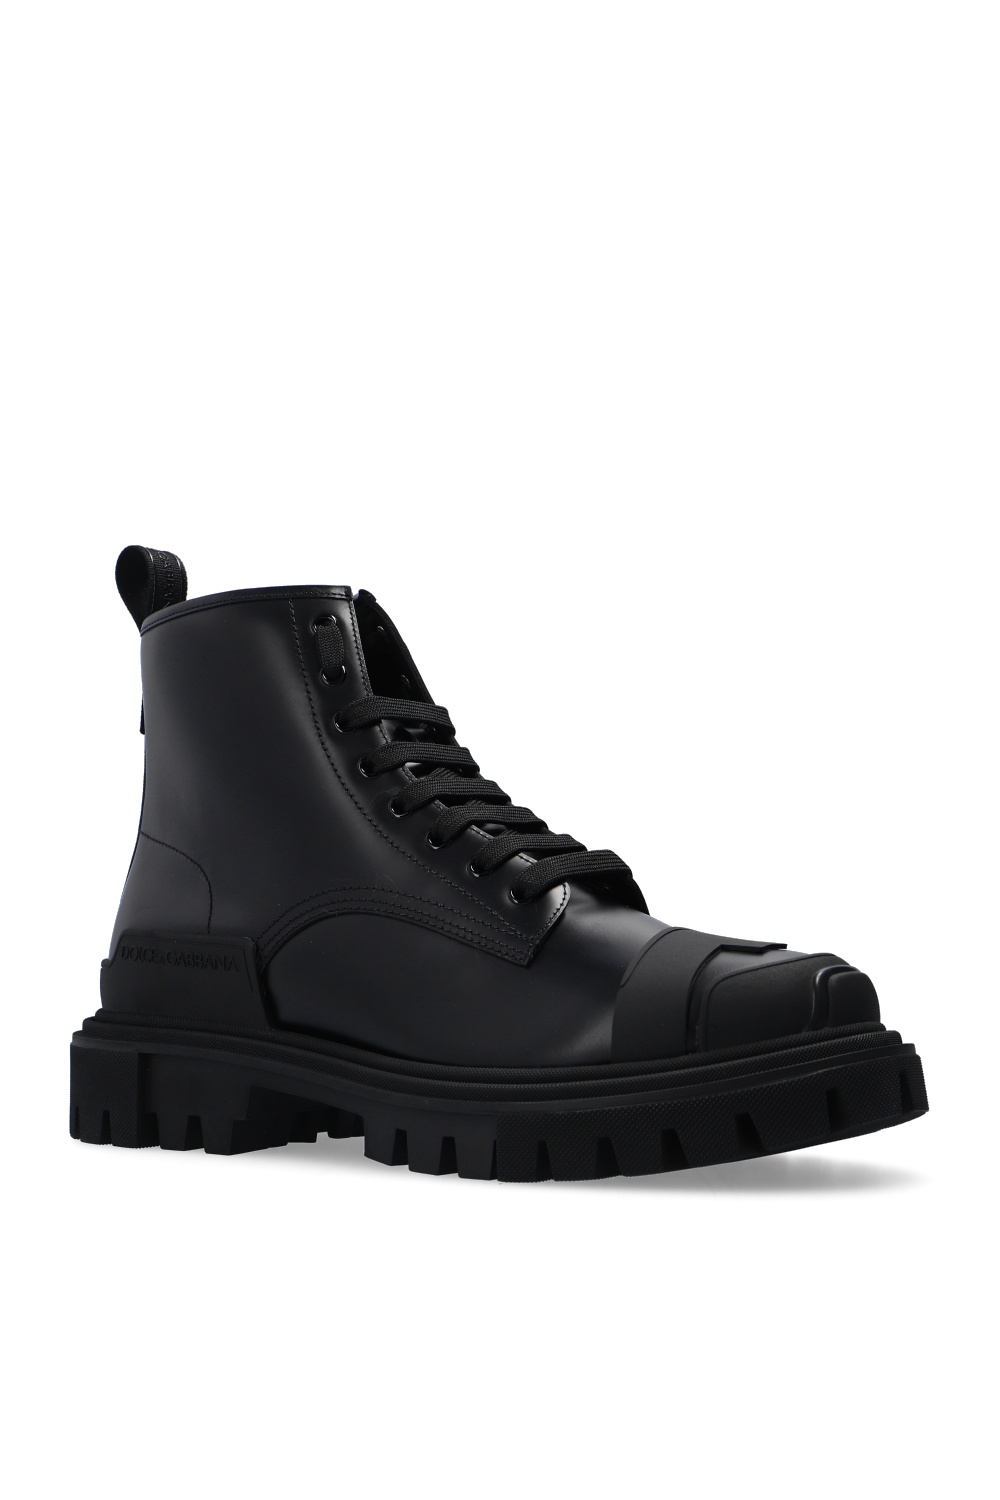 Black Leather ankle boots Dolce & Gabbana - GenesinlifeShops Canada -  Gabbana Logo Logo Pasable Średnie ryczałki